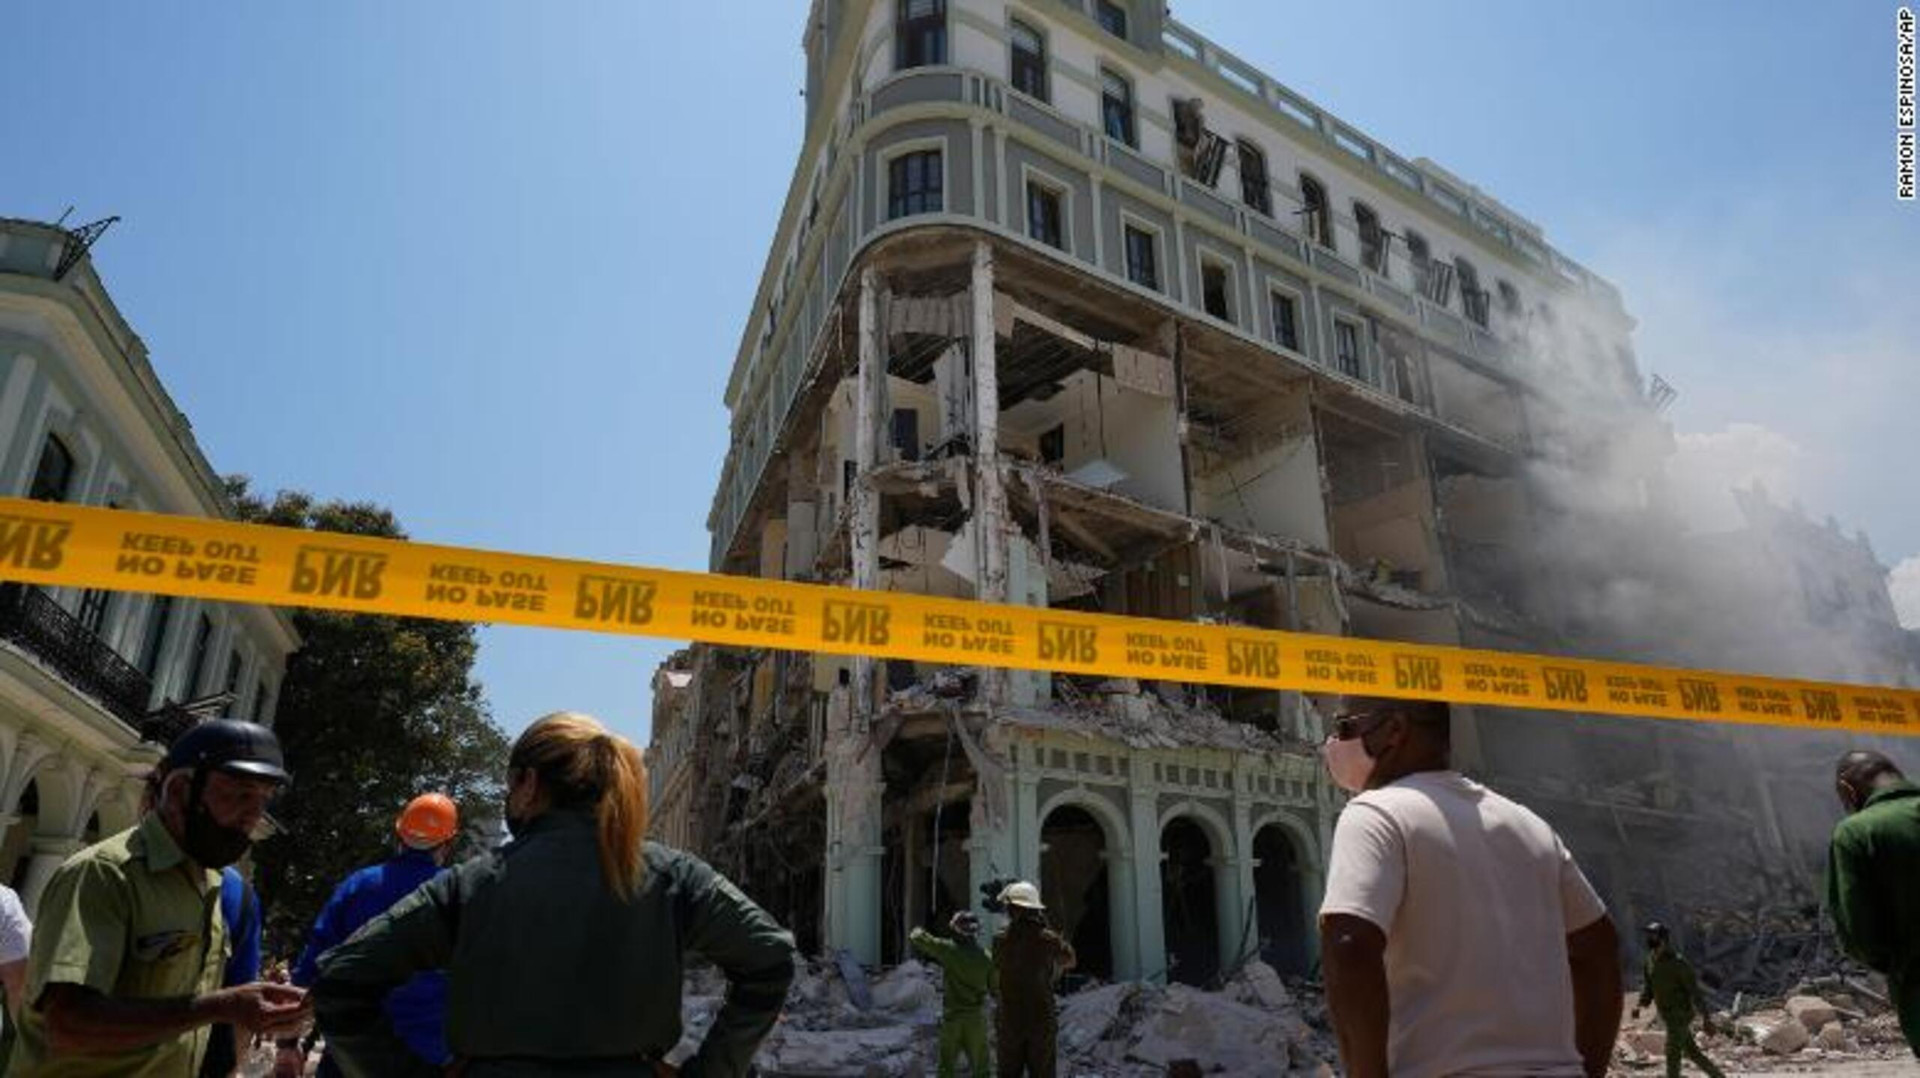 Ảnh: Hiện trường vụ nổ khiến 22 người chết tại khách sạn nổi tiếng ở Cuba - 2